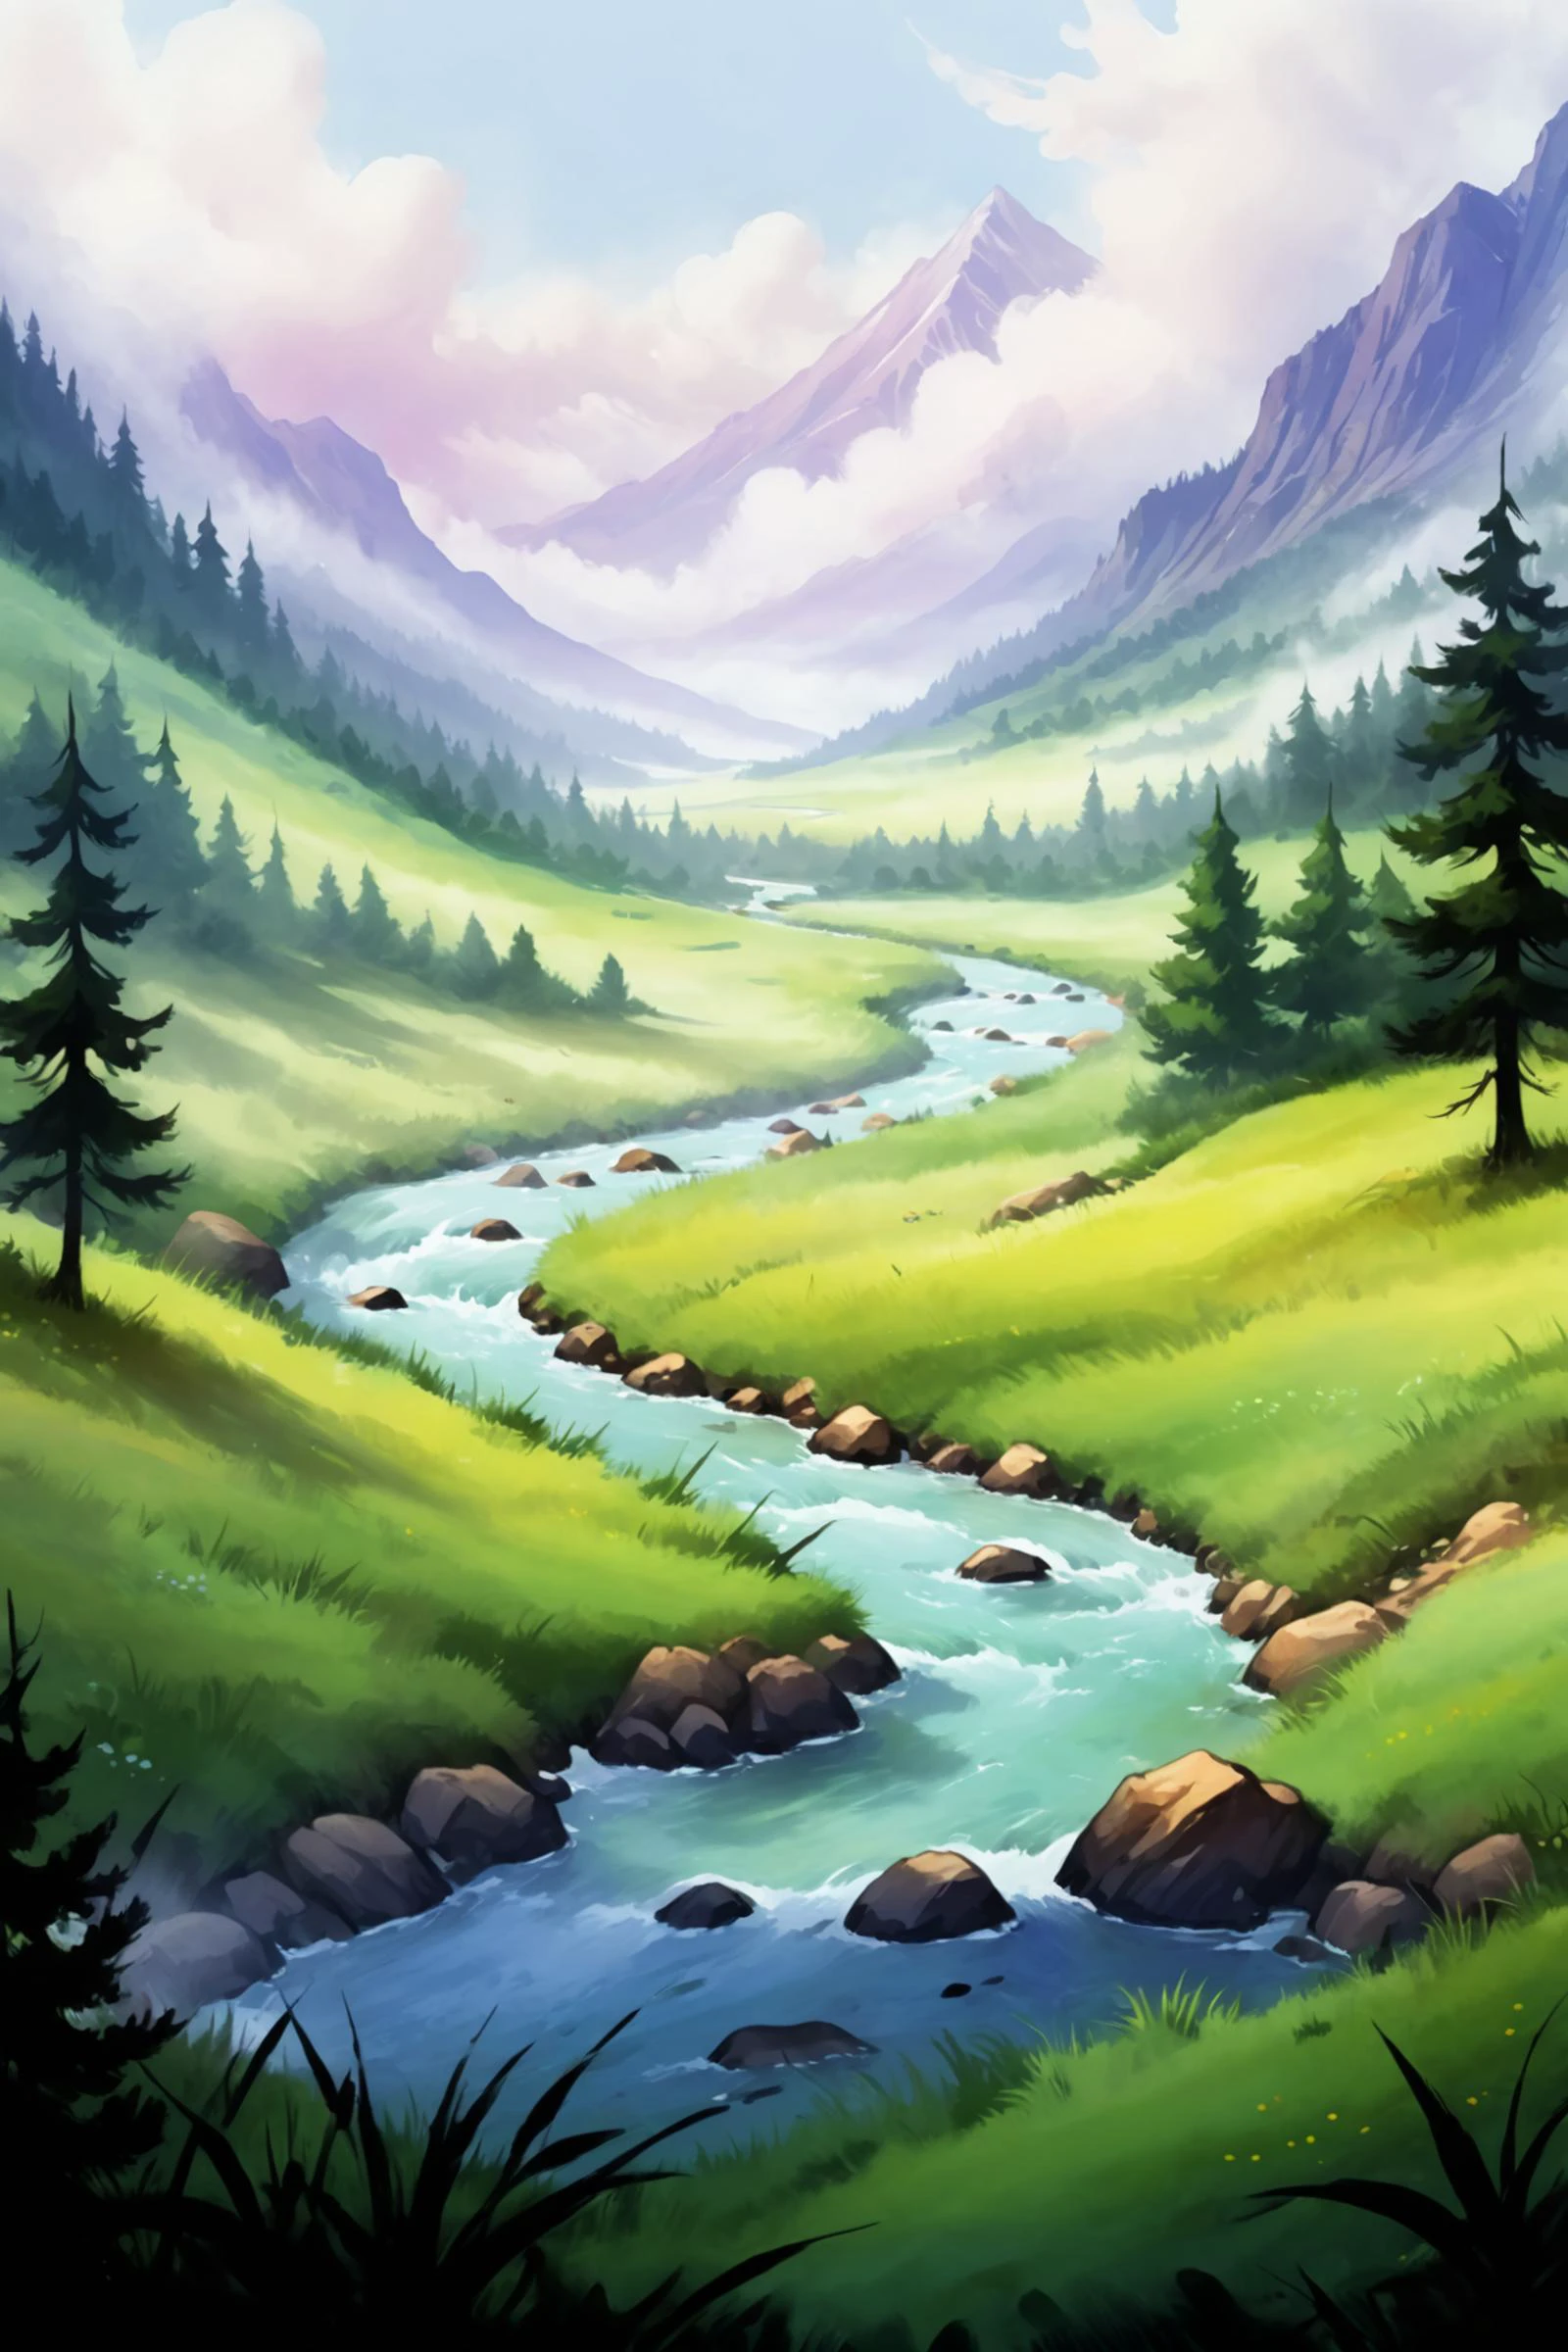 مشهد لعبة 2D, رسم زيتي وألوان مائية لمناظر طبيعية بسيطة, نهر, مرج, شَبُّورَة, سحاب, جبل, شجرة, غابة, (تحفة:1.2), أفضل جودة